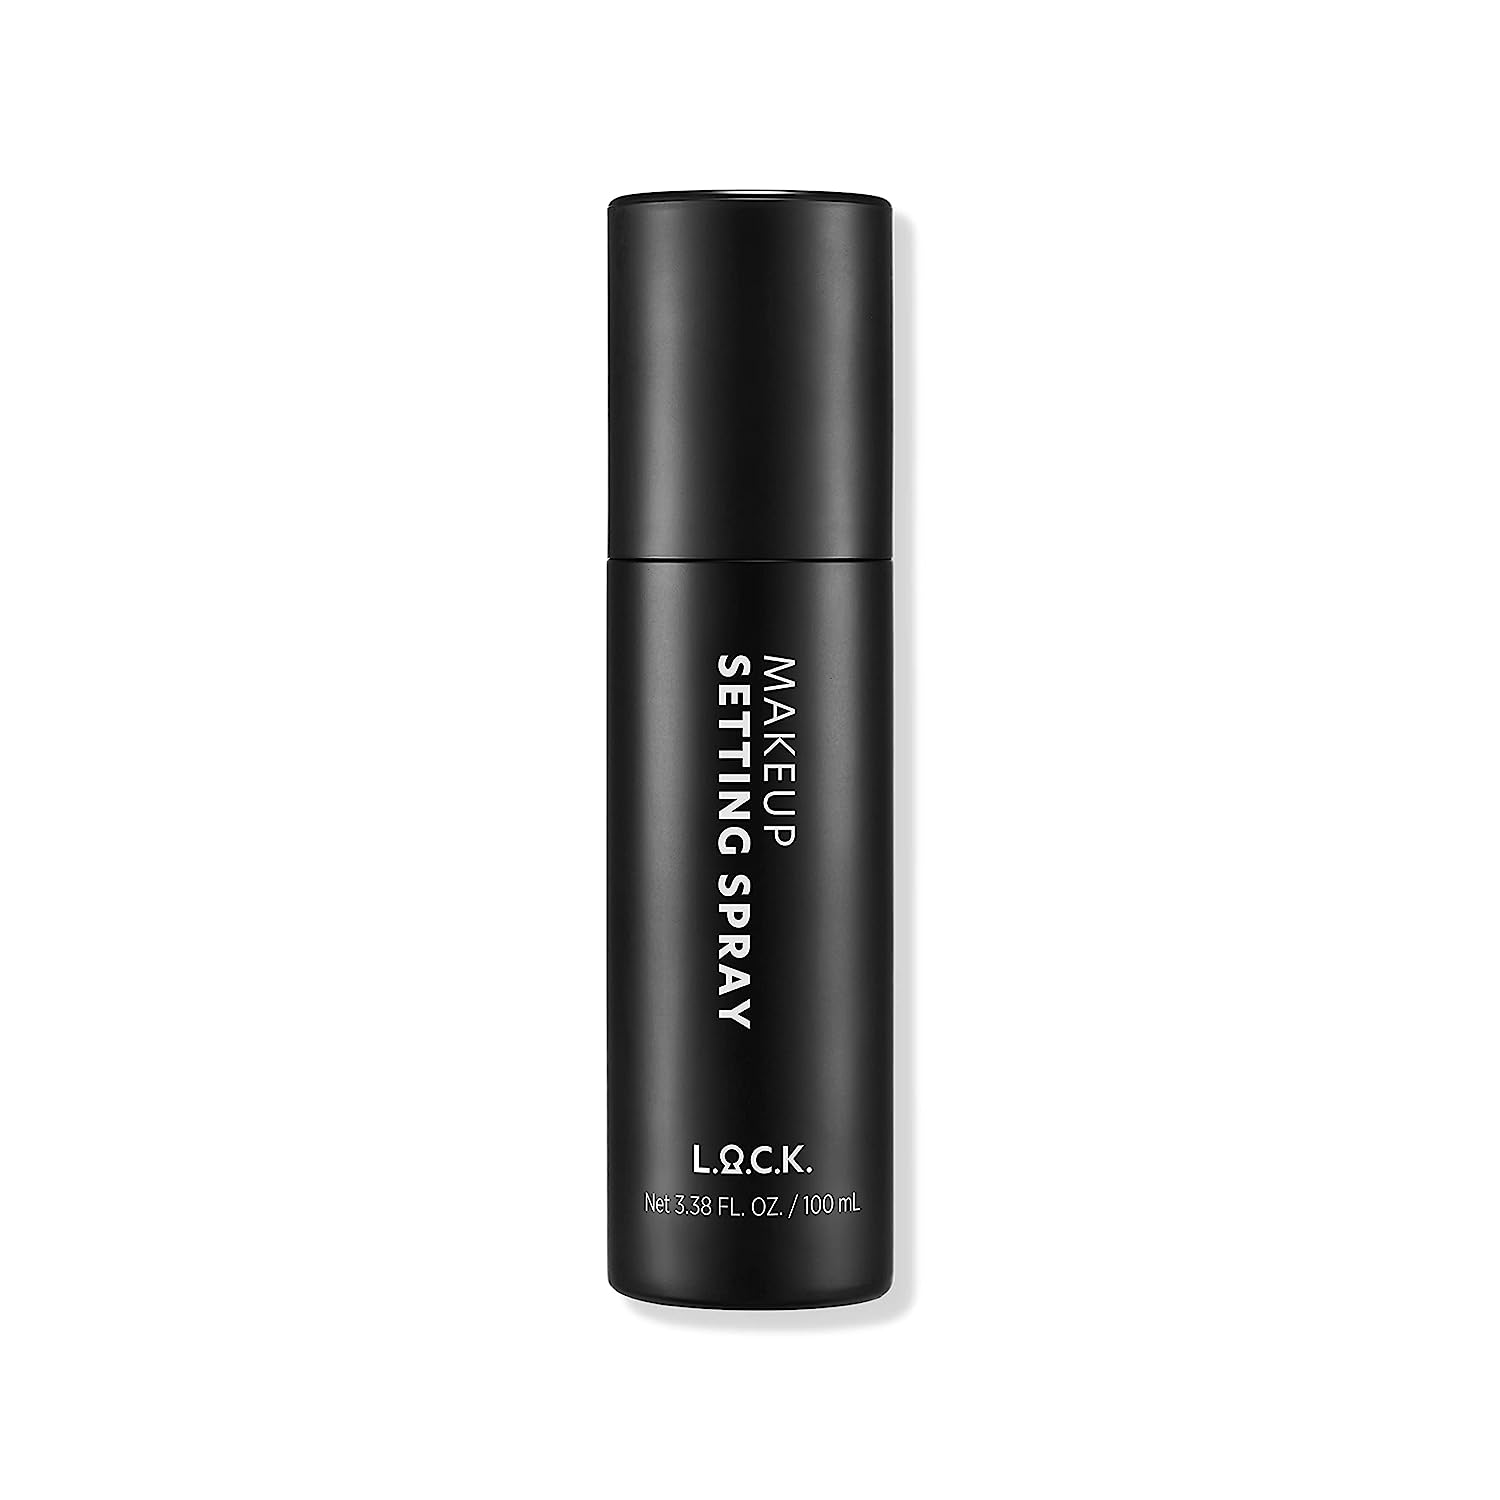 L.O.C.K. Makeup Setting Spray – Makeup Fixing Sealer [...]